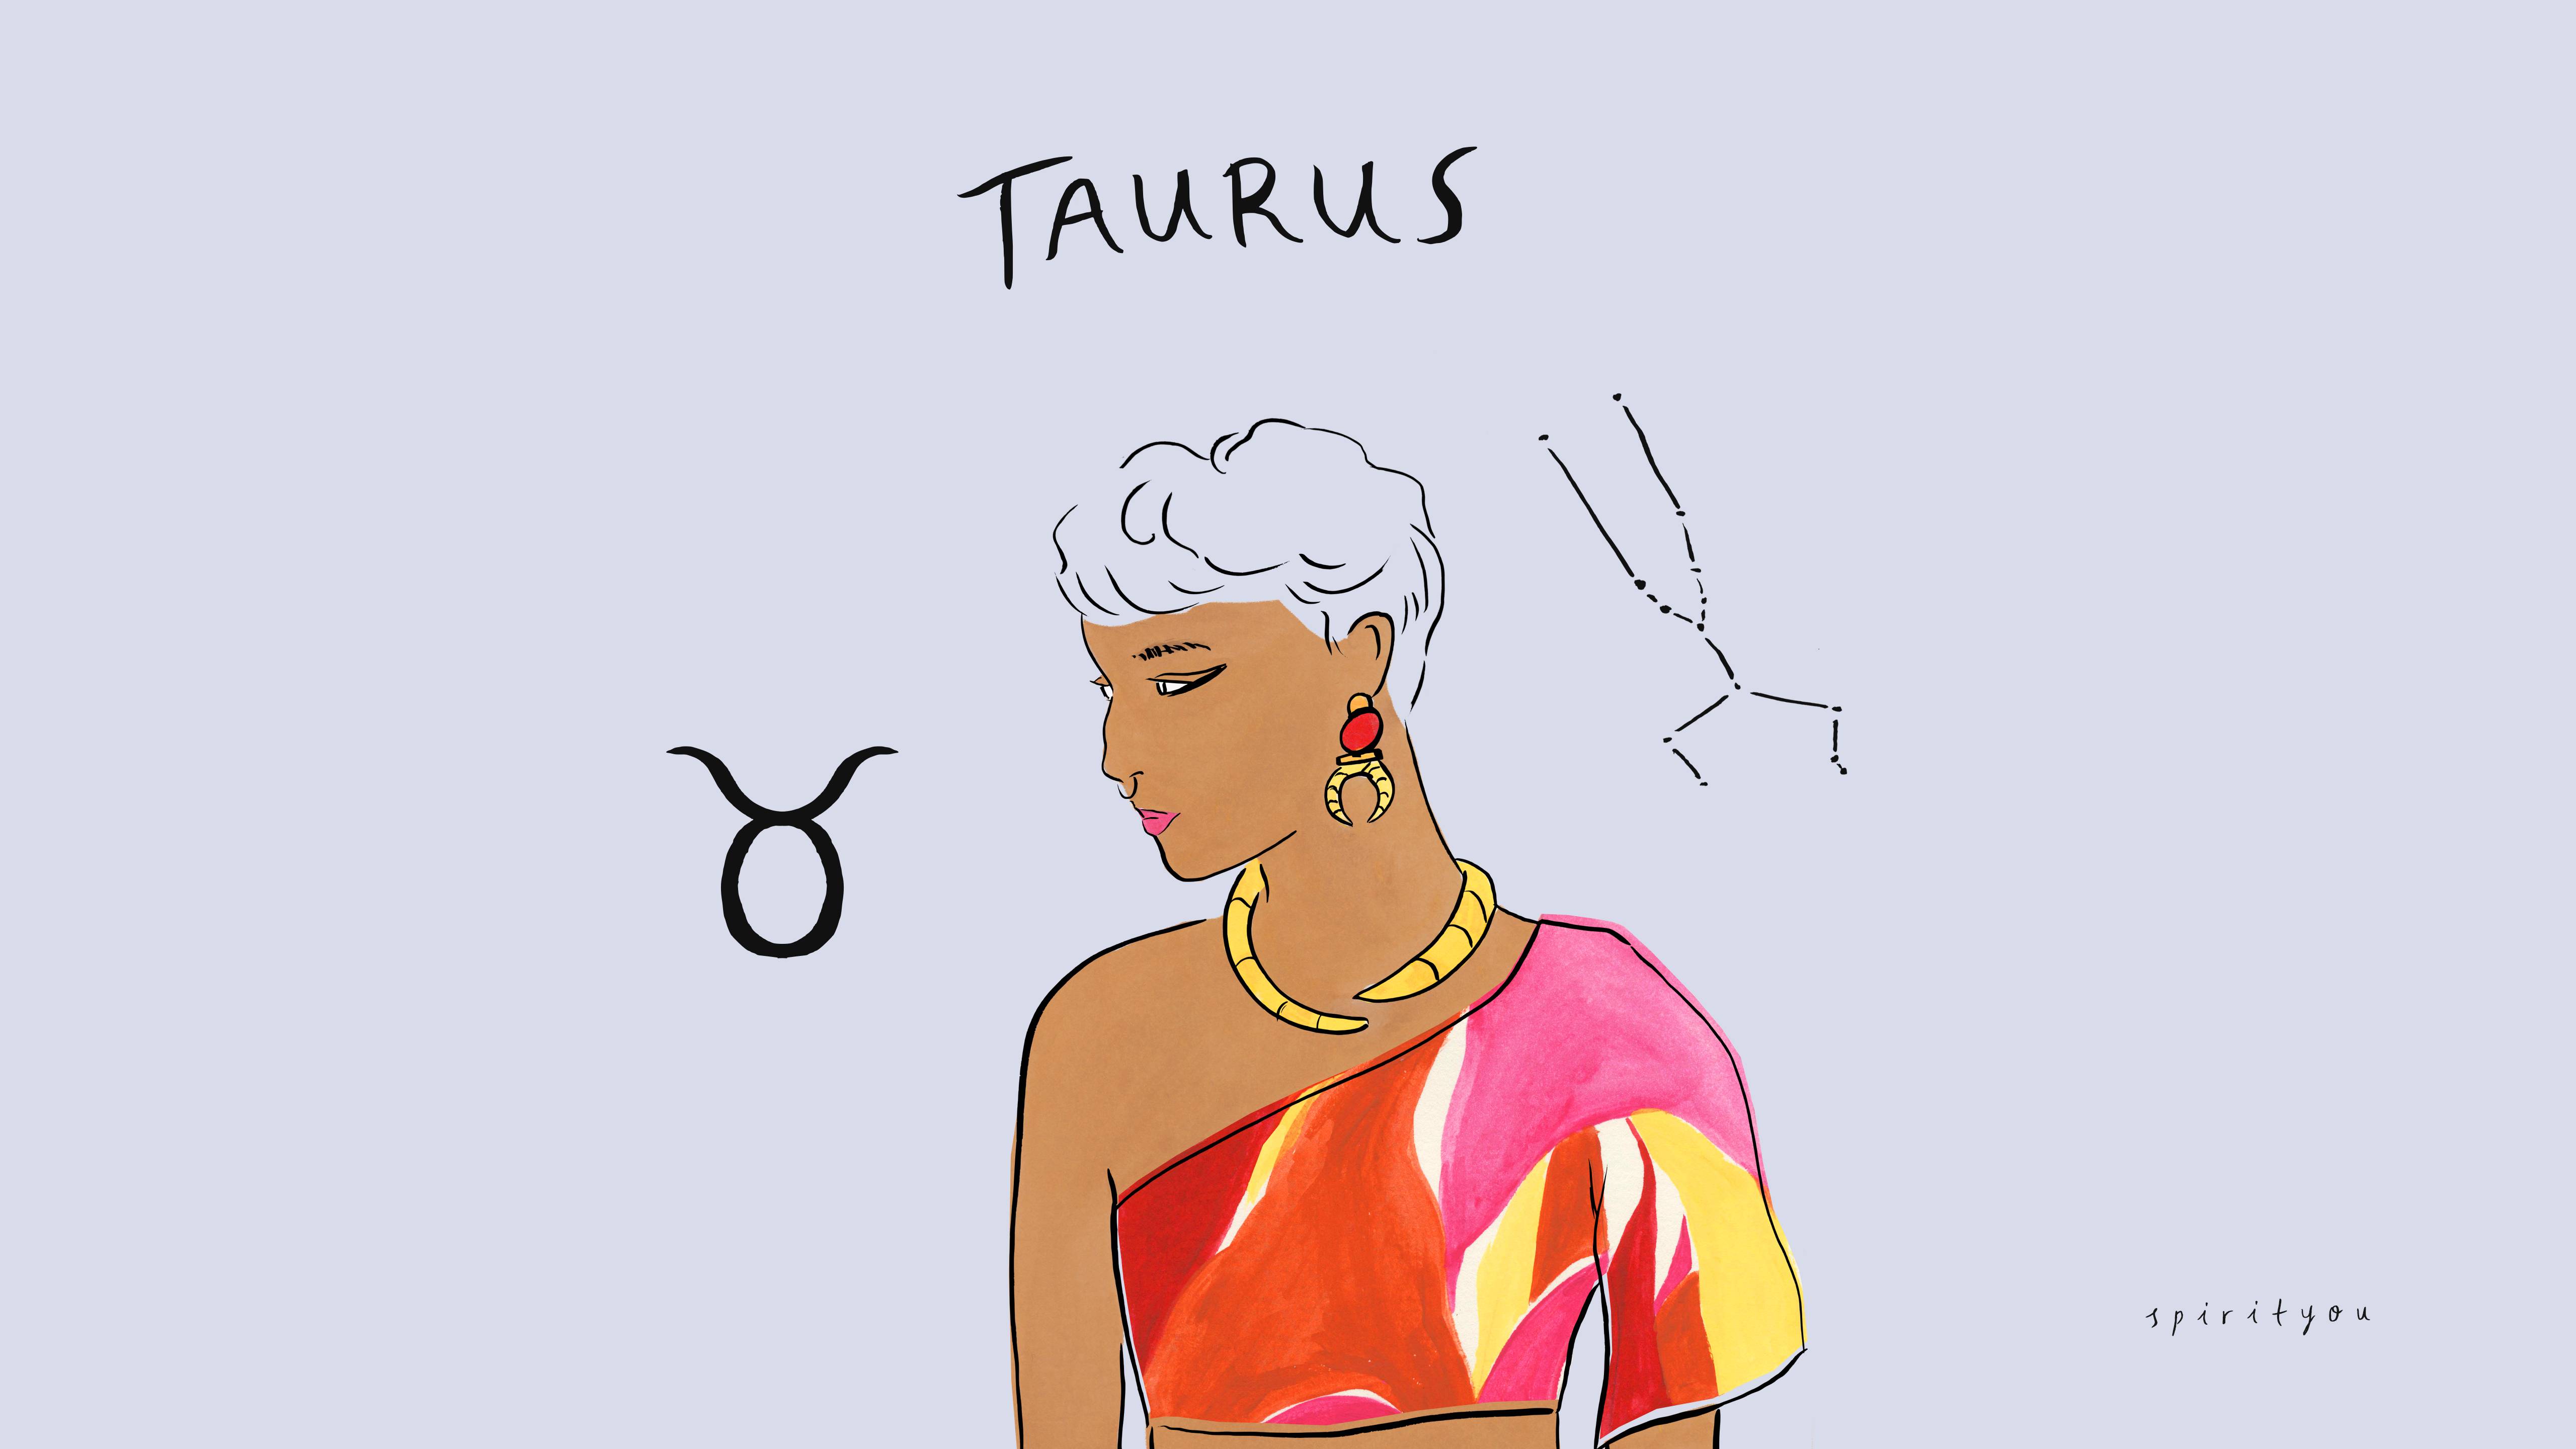 Taurus Wallpaper (Free for Desktop + Phone)